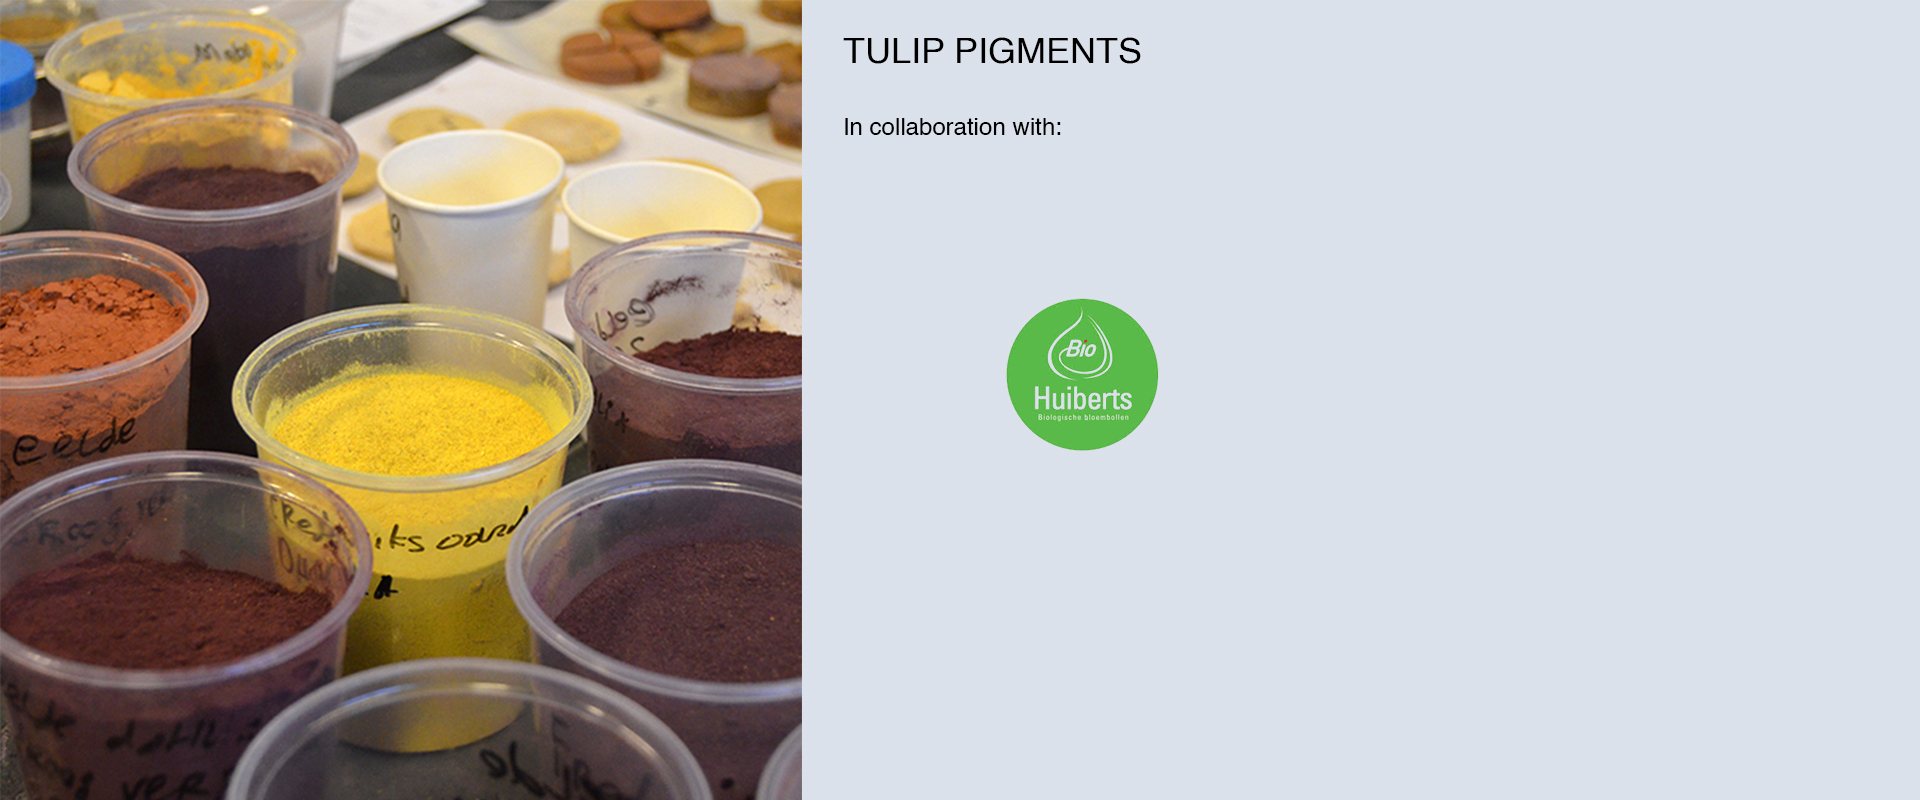 Tulip pigments